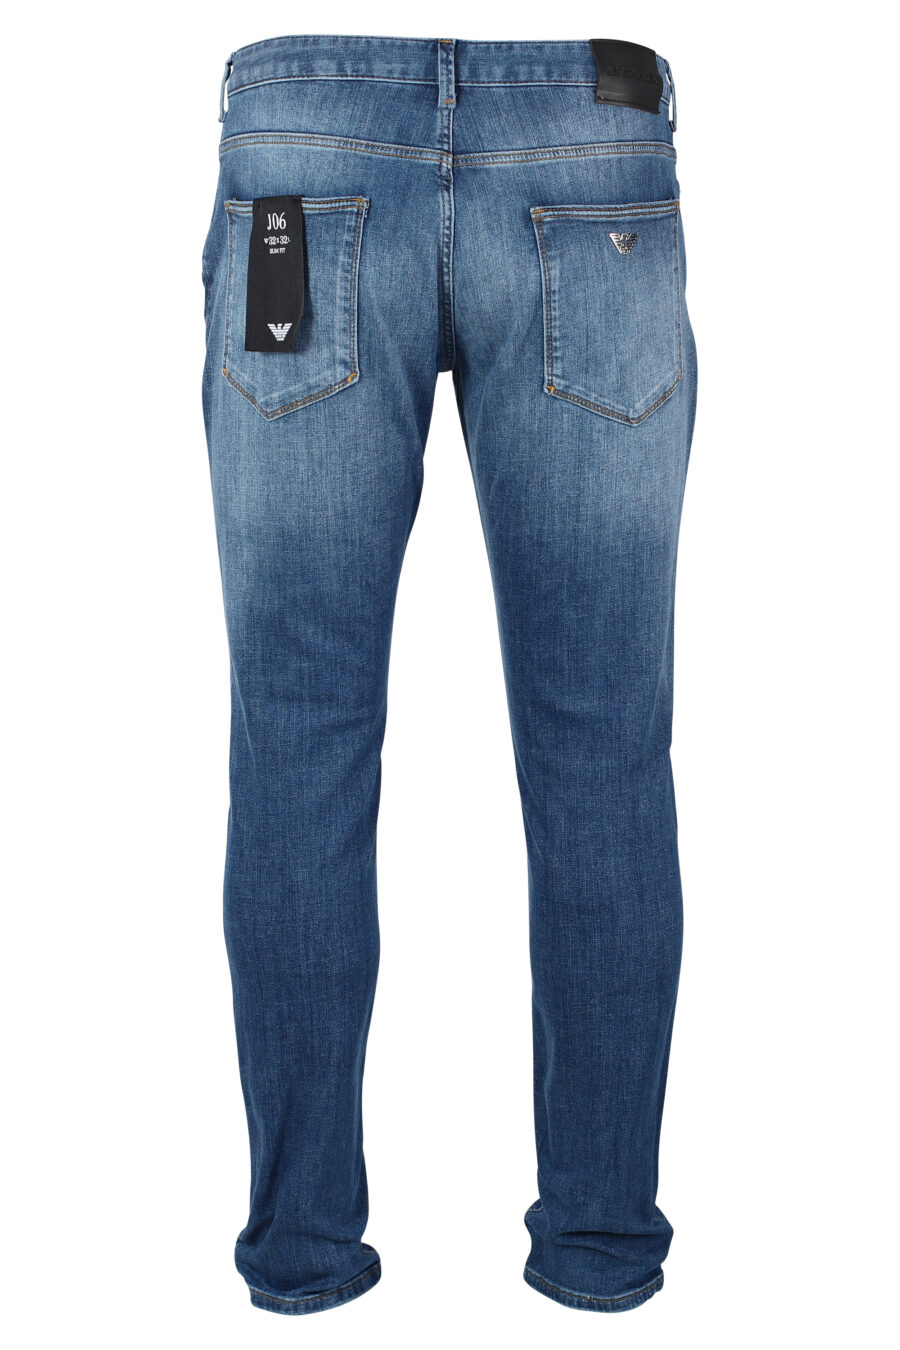 Pantalon en denim bleu avec minilogue en métal - IMG 9924 1